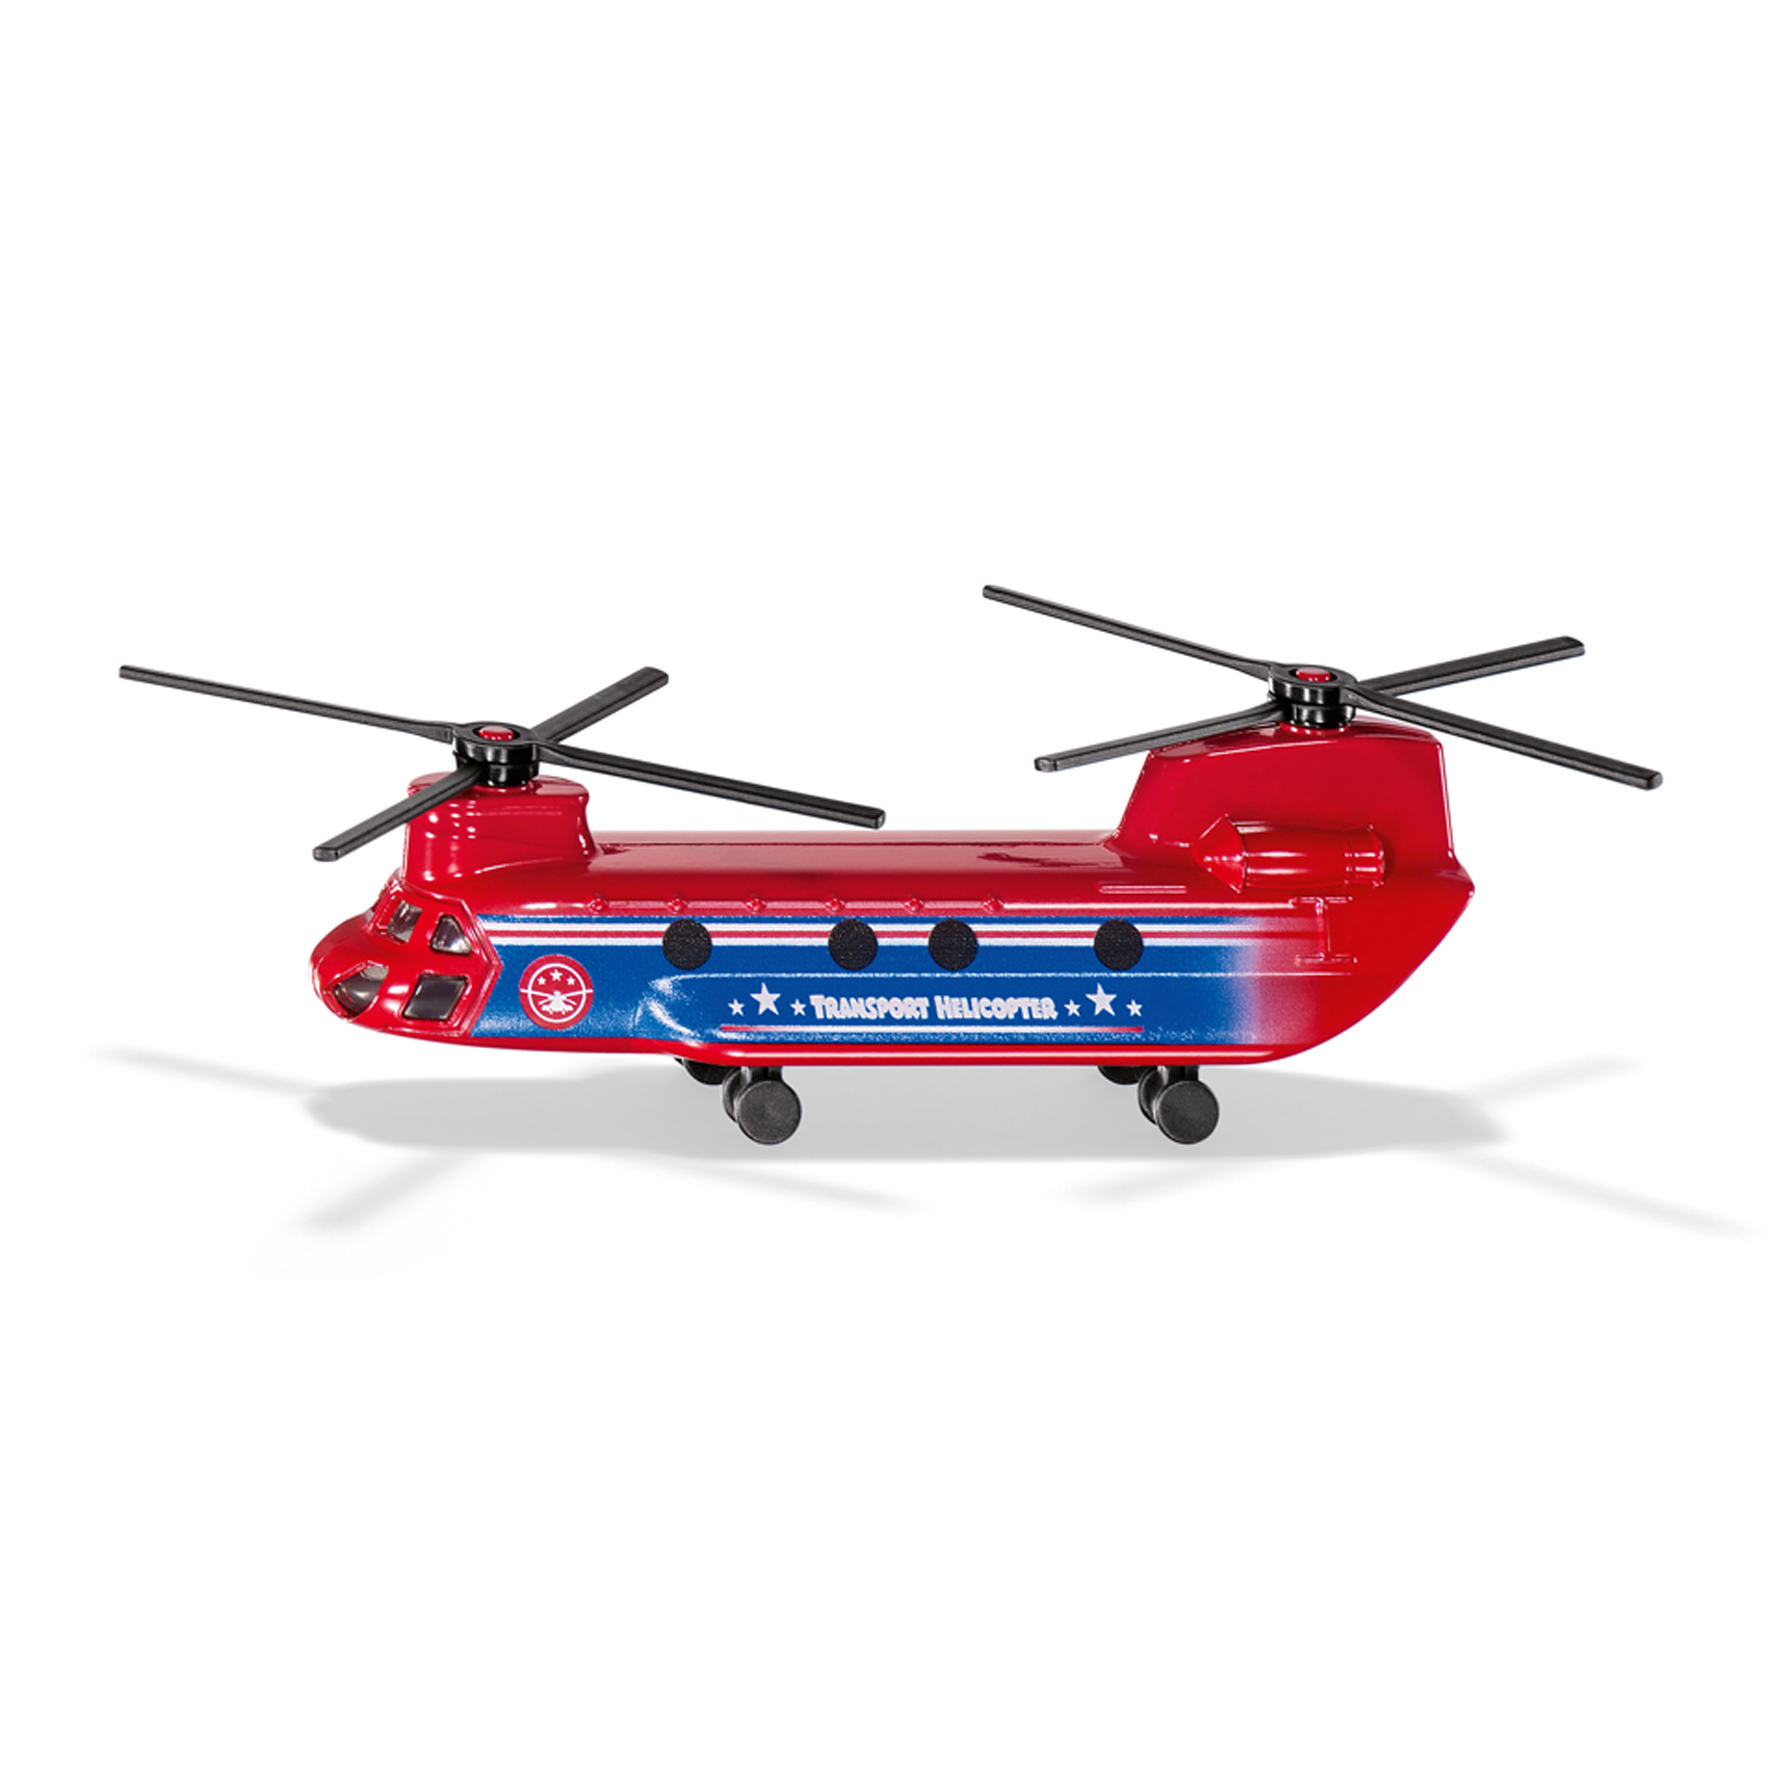 Fly & båd siku transport helicopter